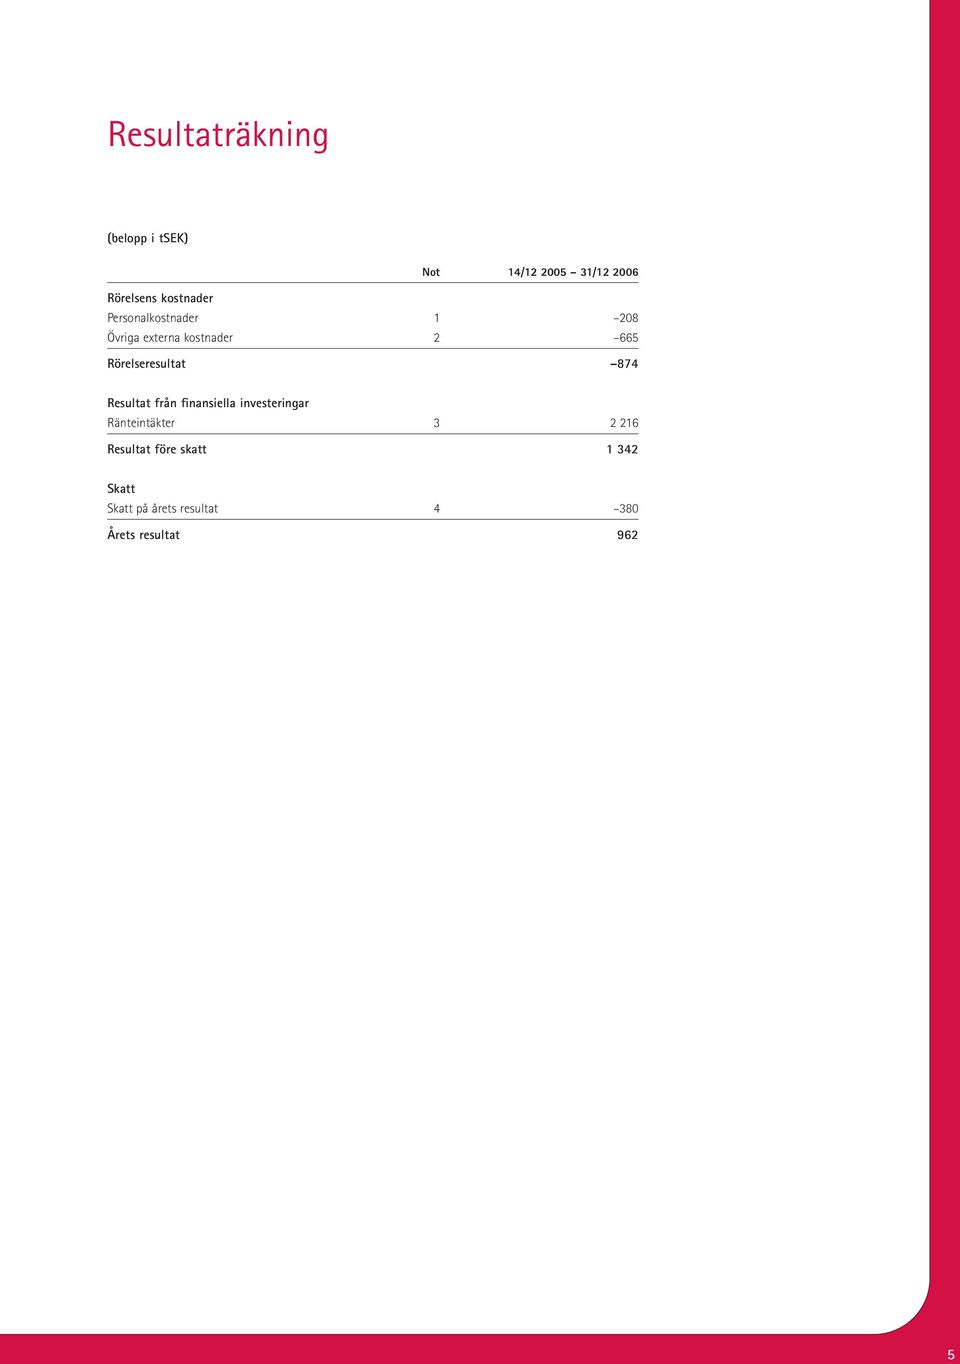 Rörelseresultat 874 Resultat från finansiella investeringar Ränteintäkter